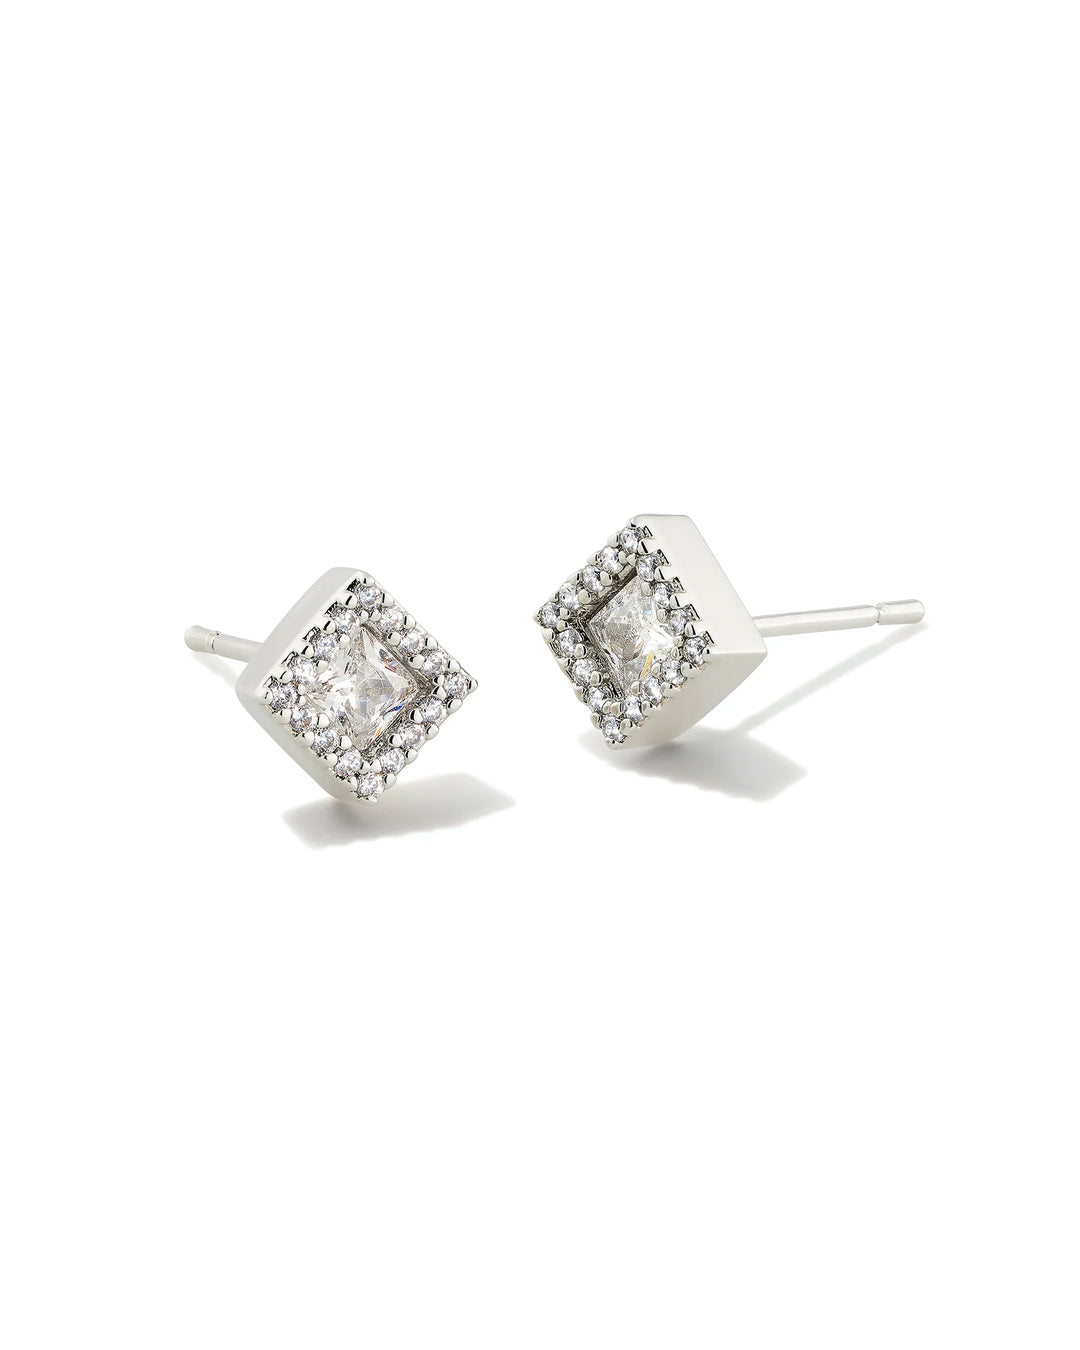 Kendra Scott Gracie Silver Stud Earrings in White Crystal